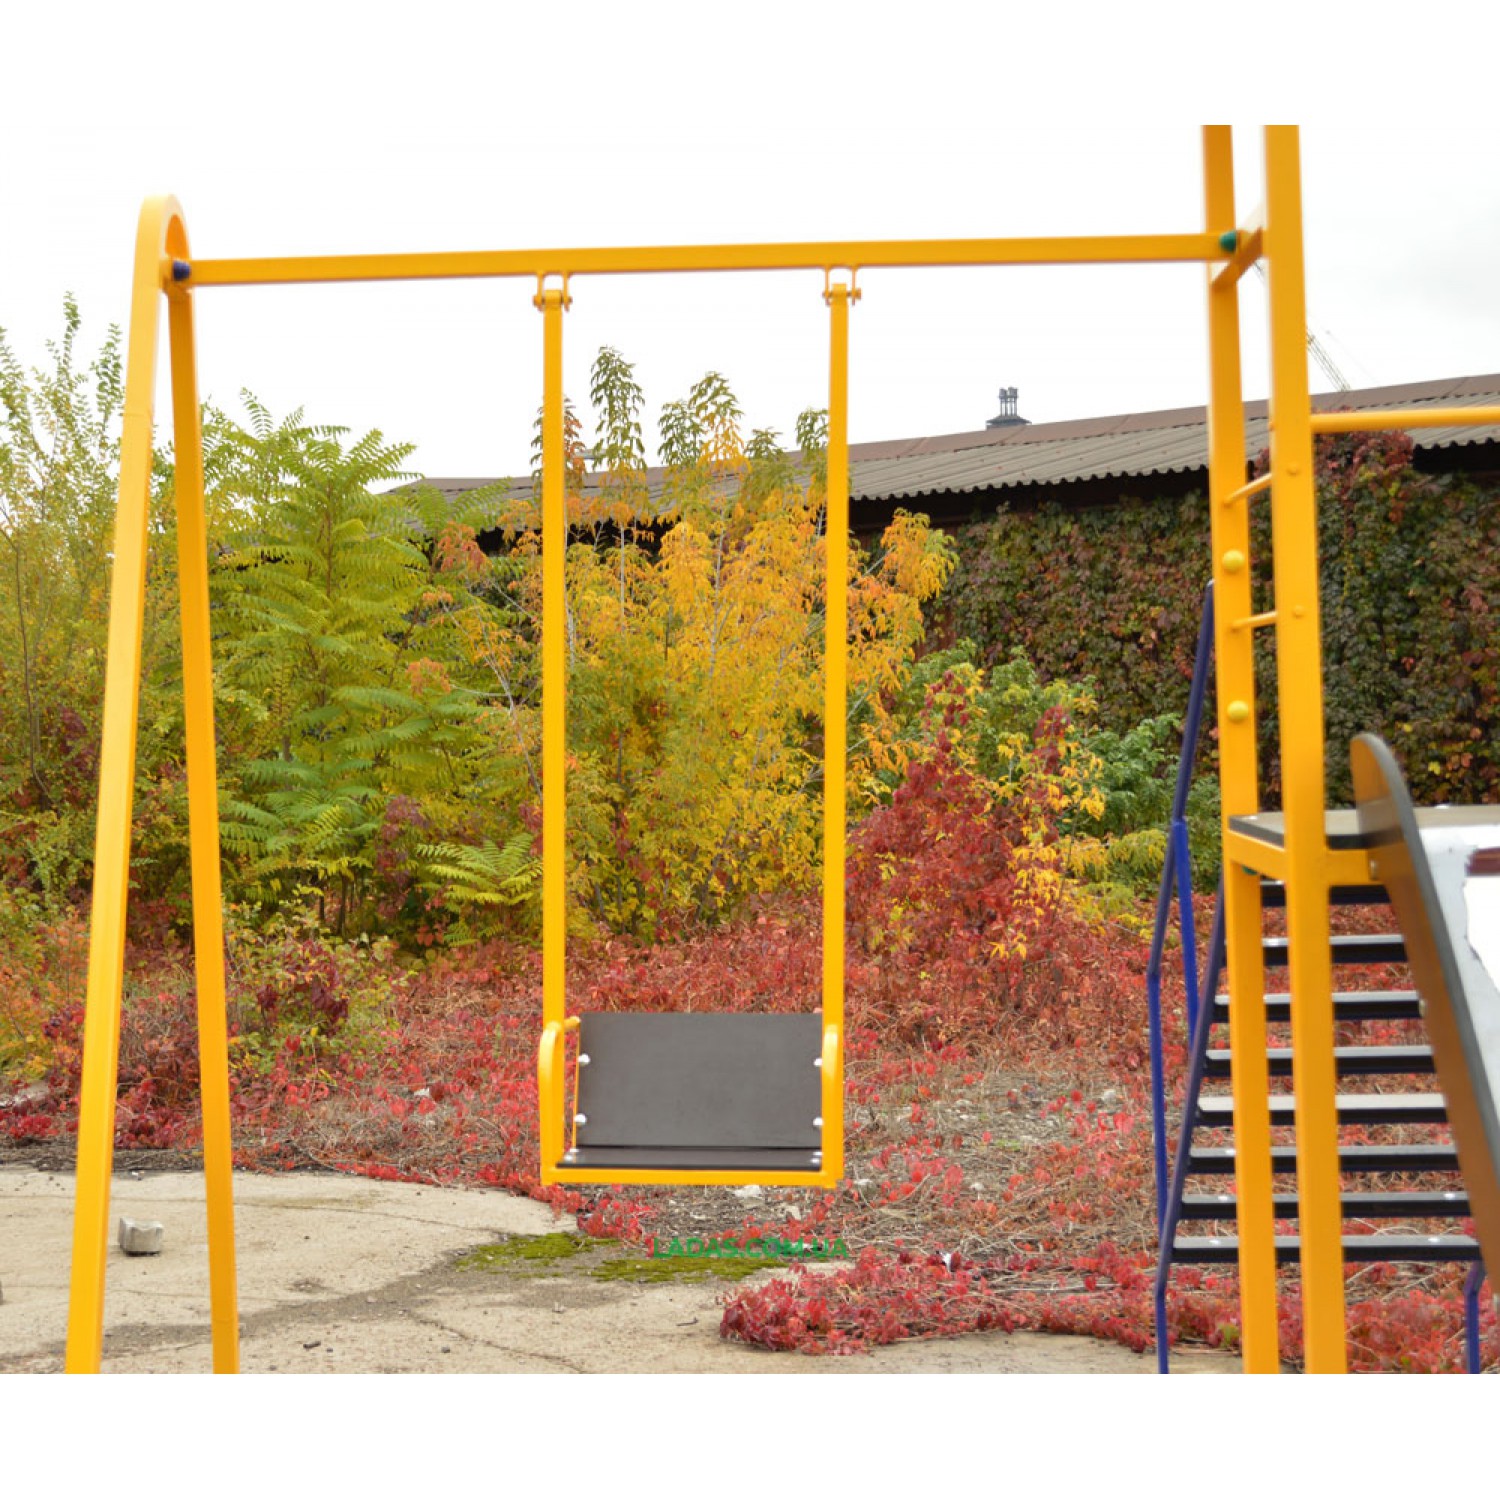 Детский игровая площадка PlayGraund - 1 с горкой, качелей, рукоходом и шведской лестницей (под бетонирование)